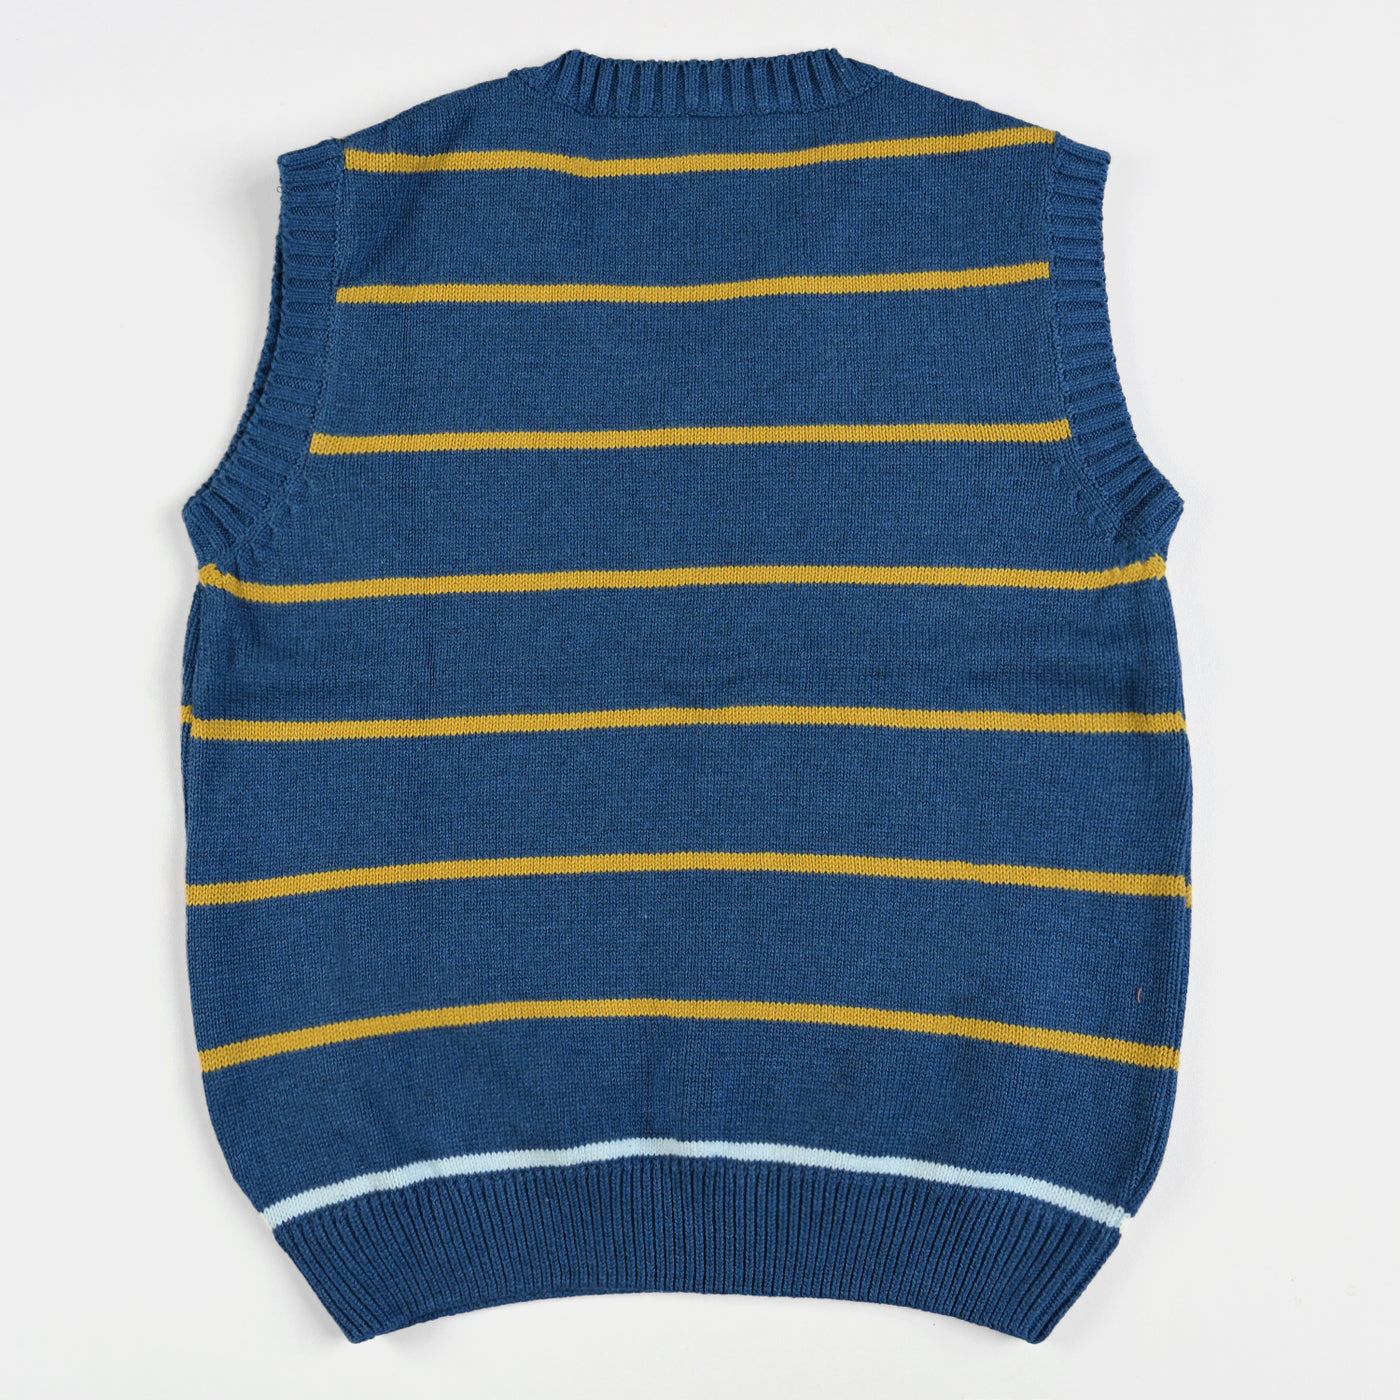 Boys Acrylic Sleeveless Sweater Striper-NAVY